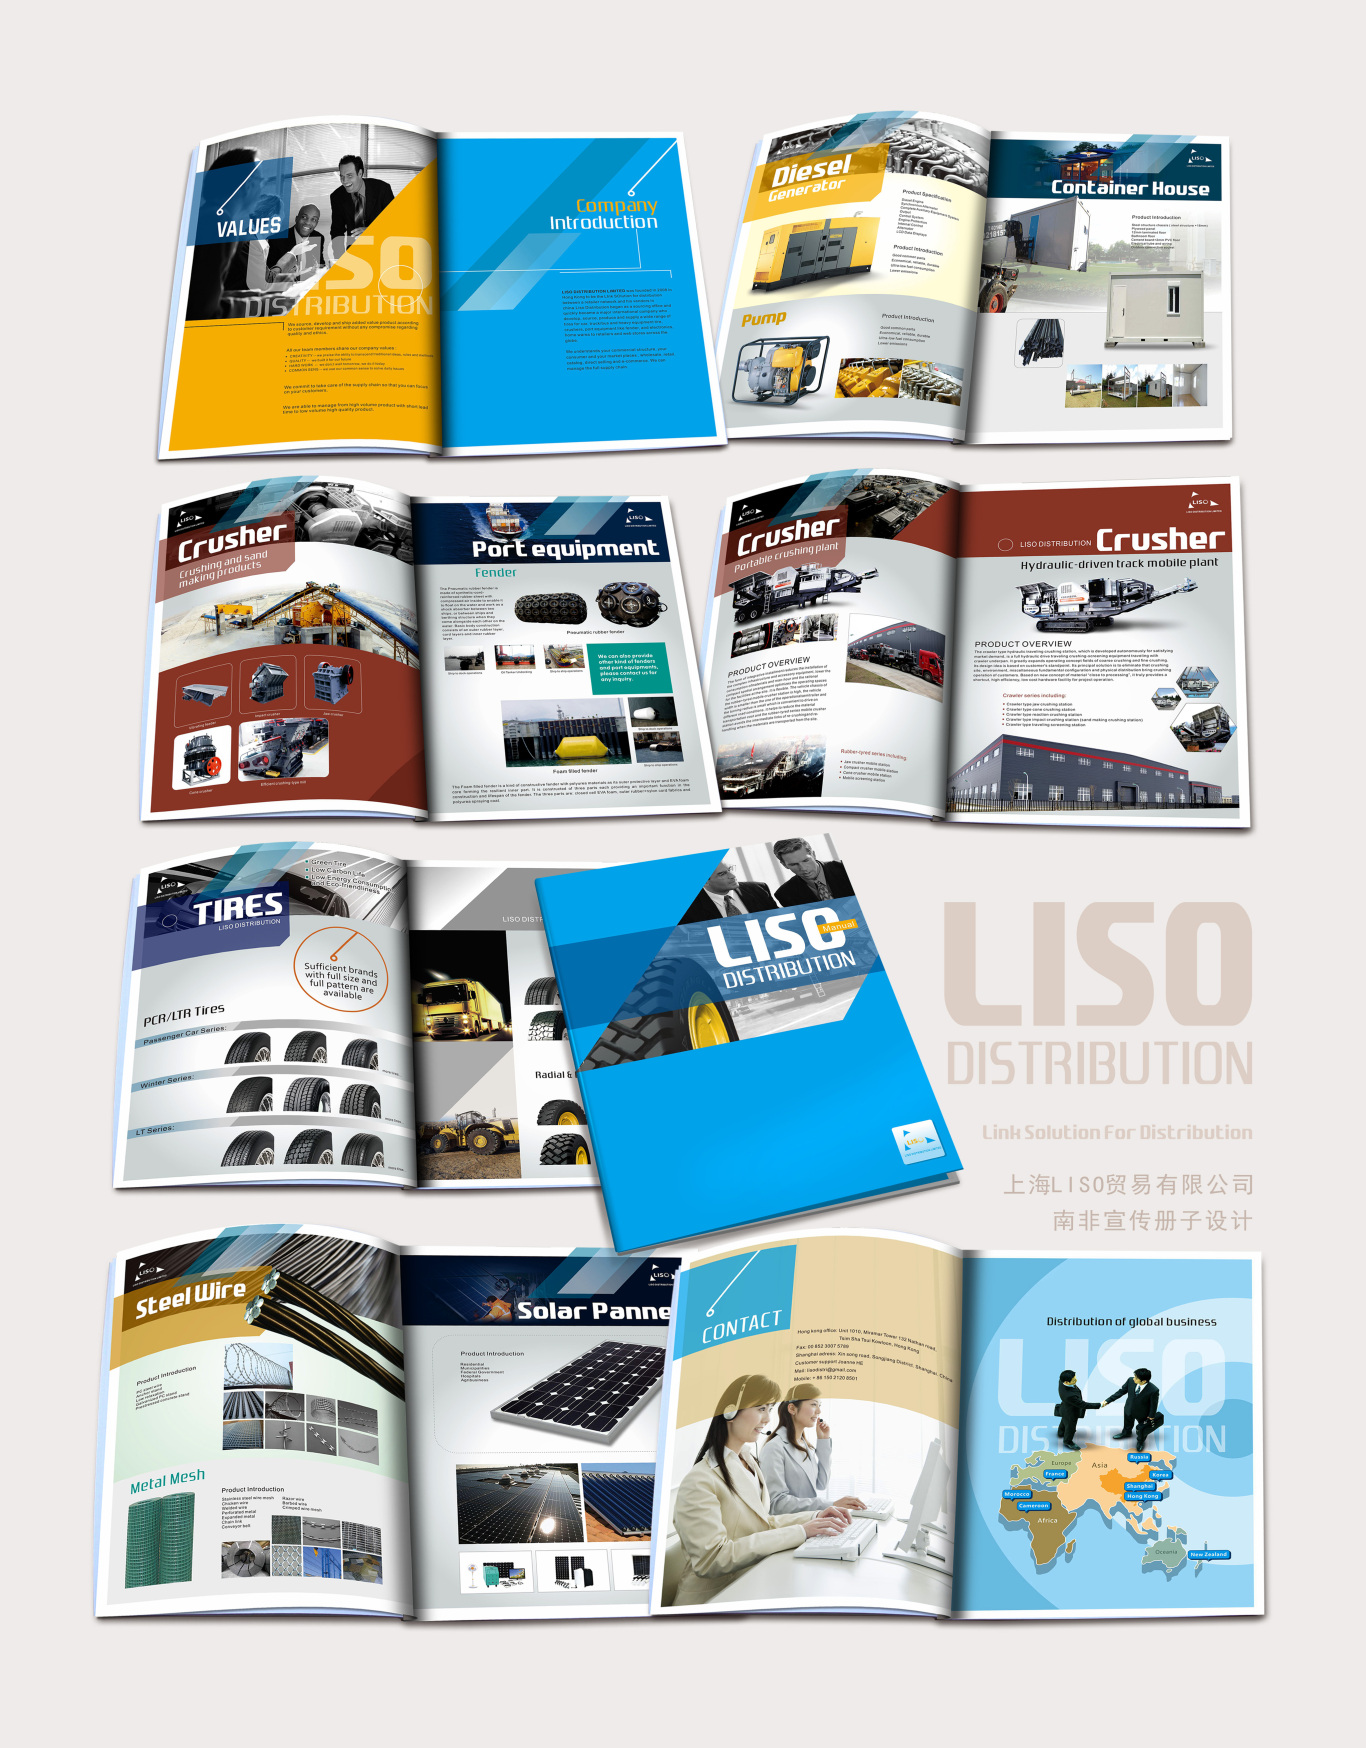 上海LISO貿易有限公司宣傳冊設計圖2